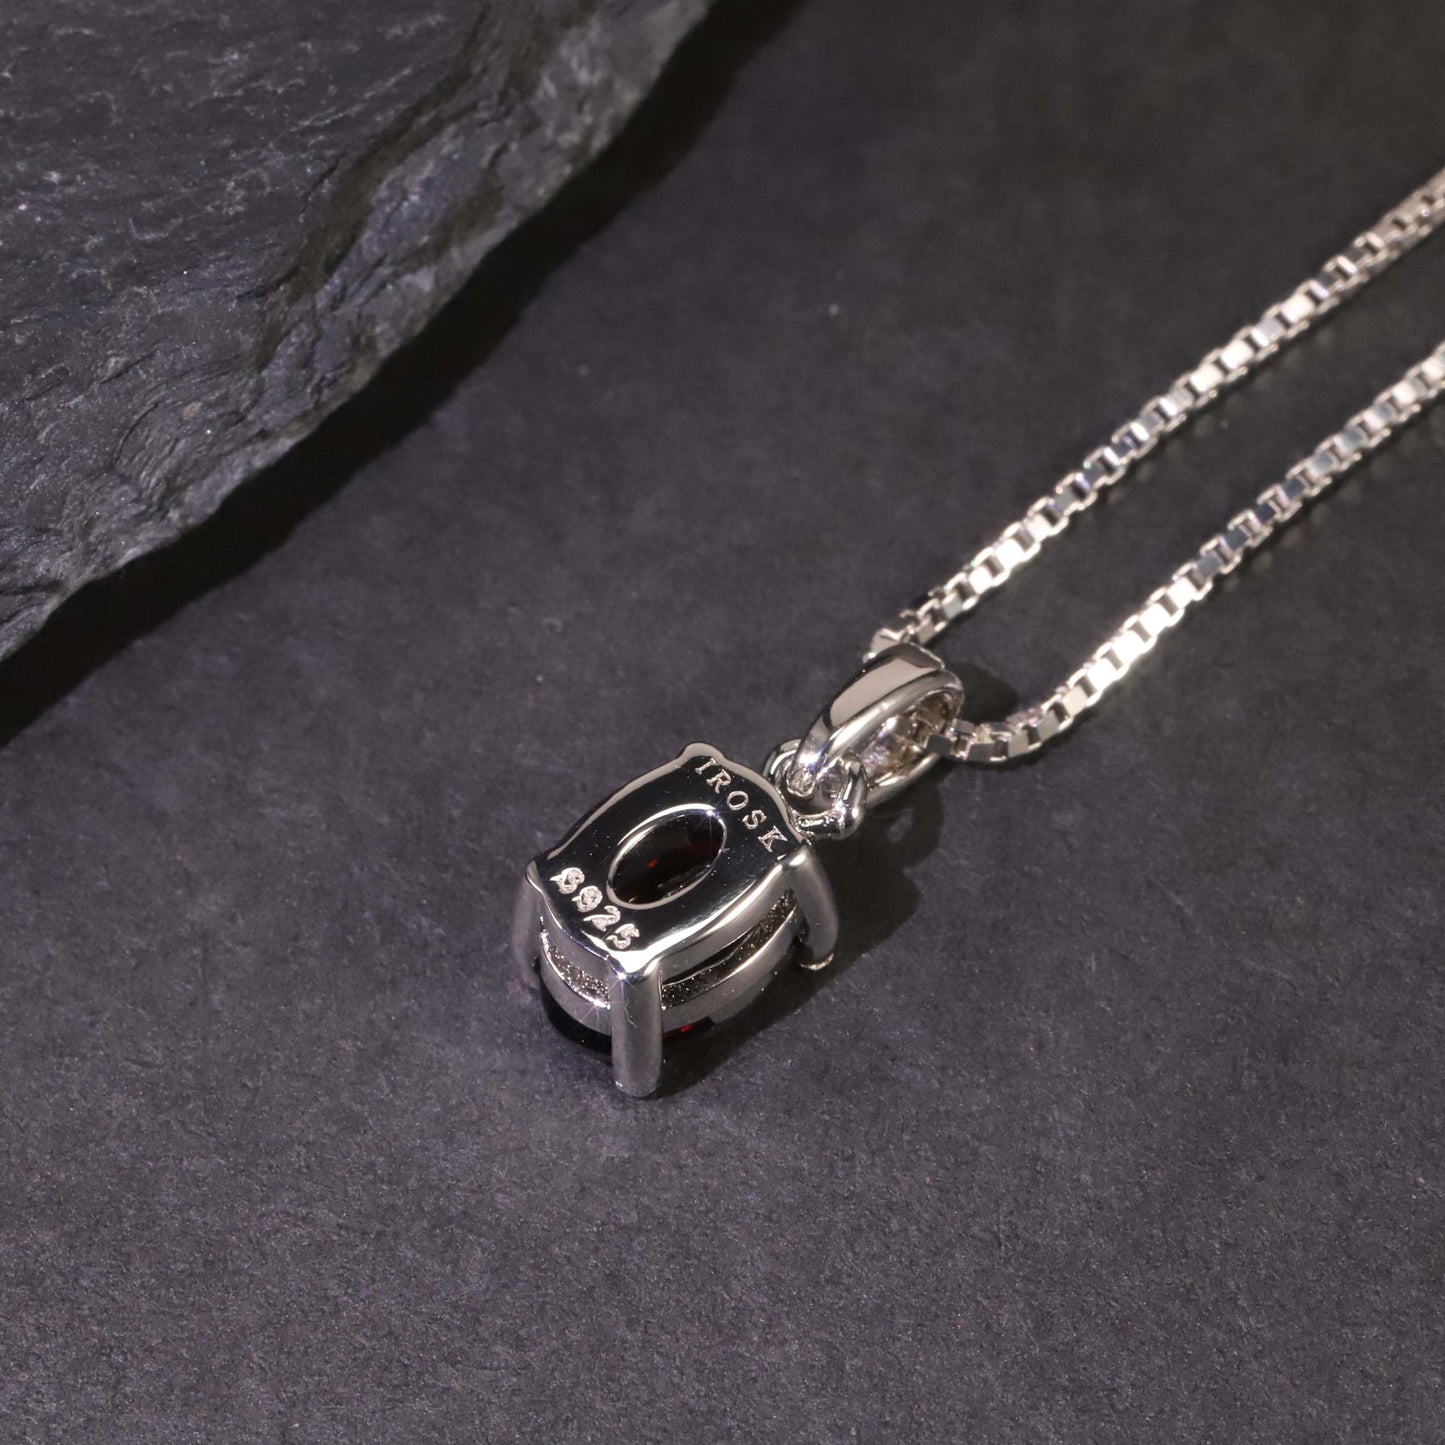 Irosk Oval Cut Necklace in Sterling Silver -  Garnet